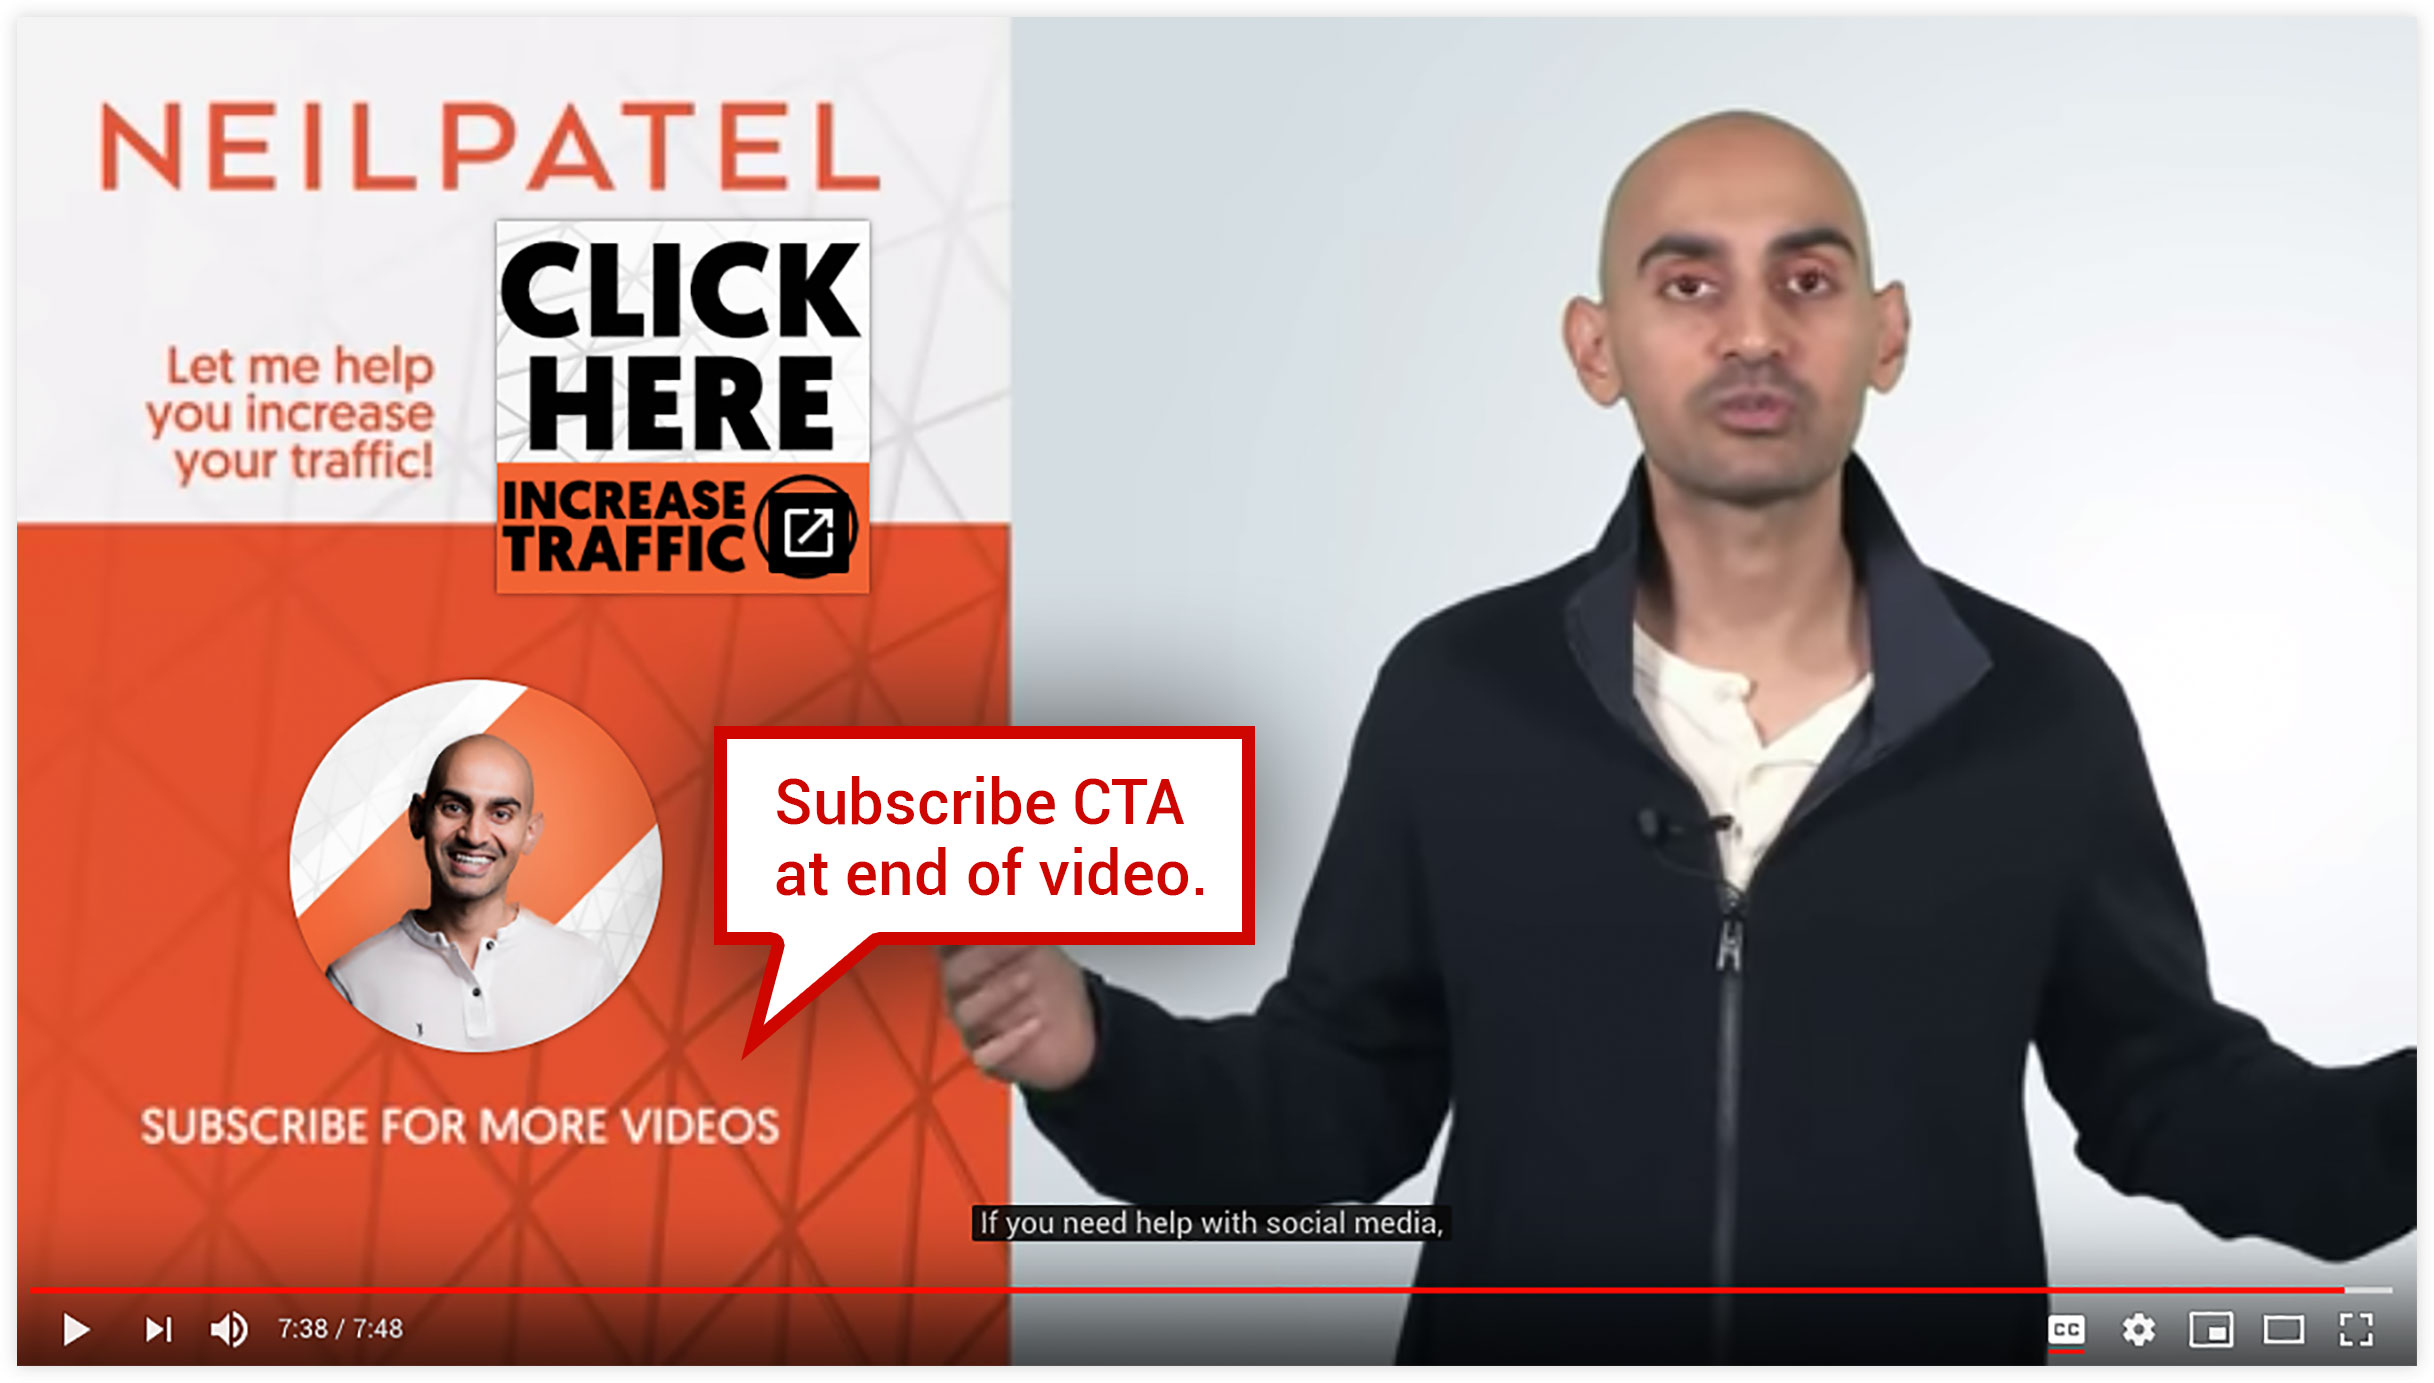 Esempio di Neil Patel YouTube Video Marketing